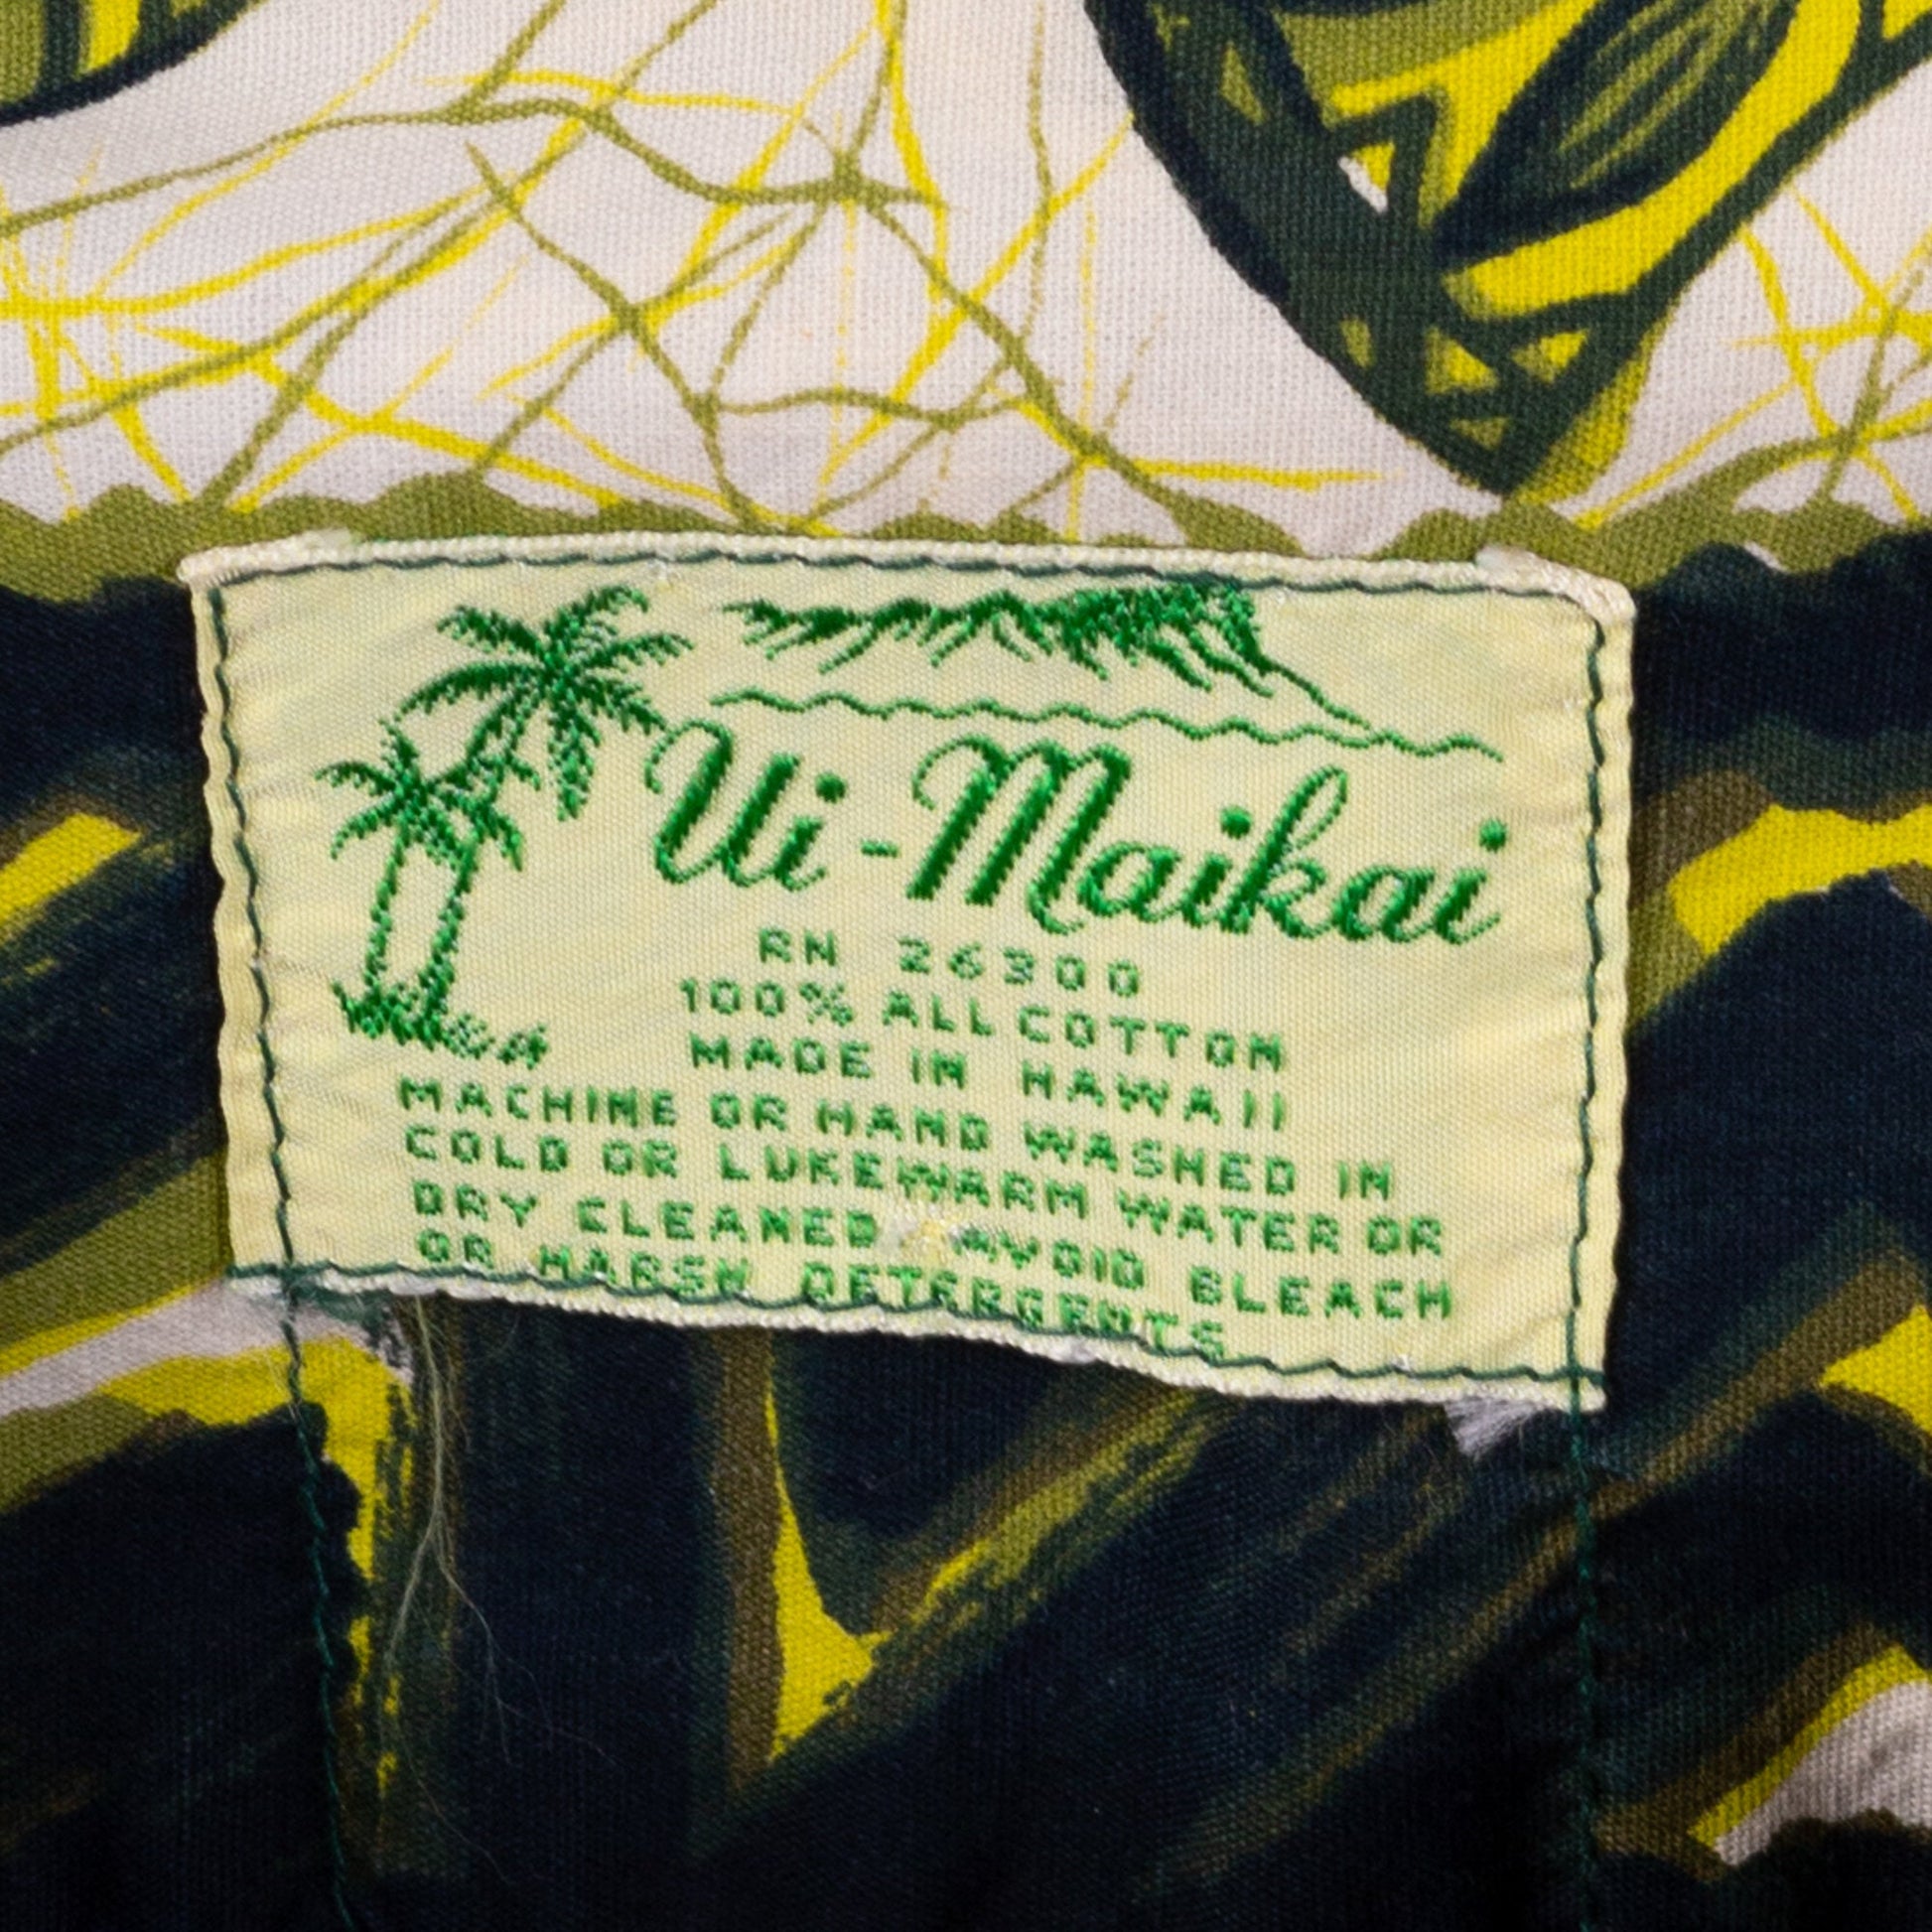 1960s Ui-Maikai Hawaiian Floral Tiki Shirt - Men's Large